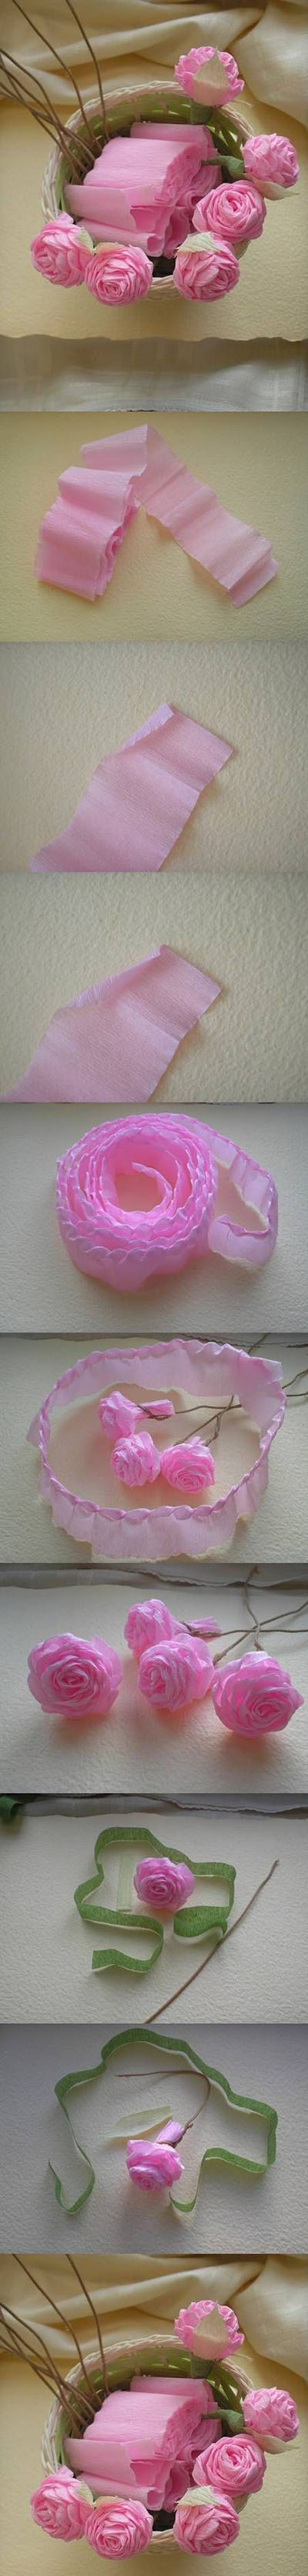 16  DIY Rose from Crepe Paper1f6b04